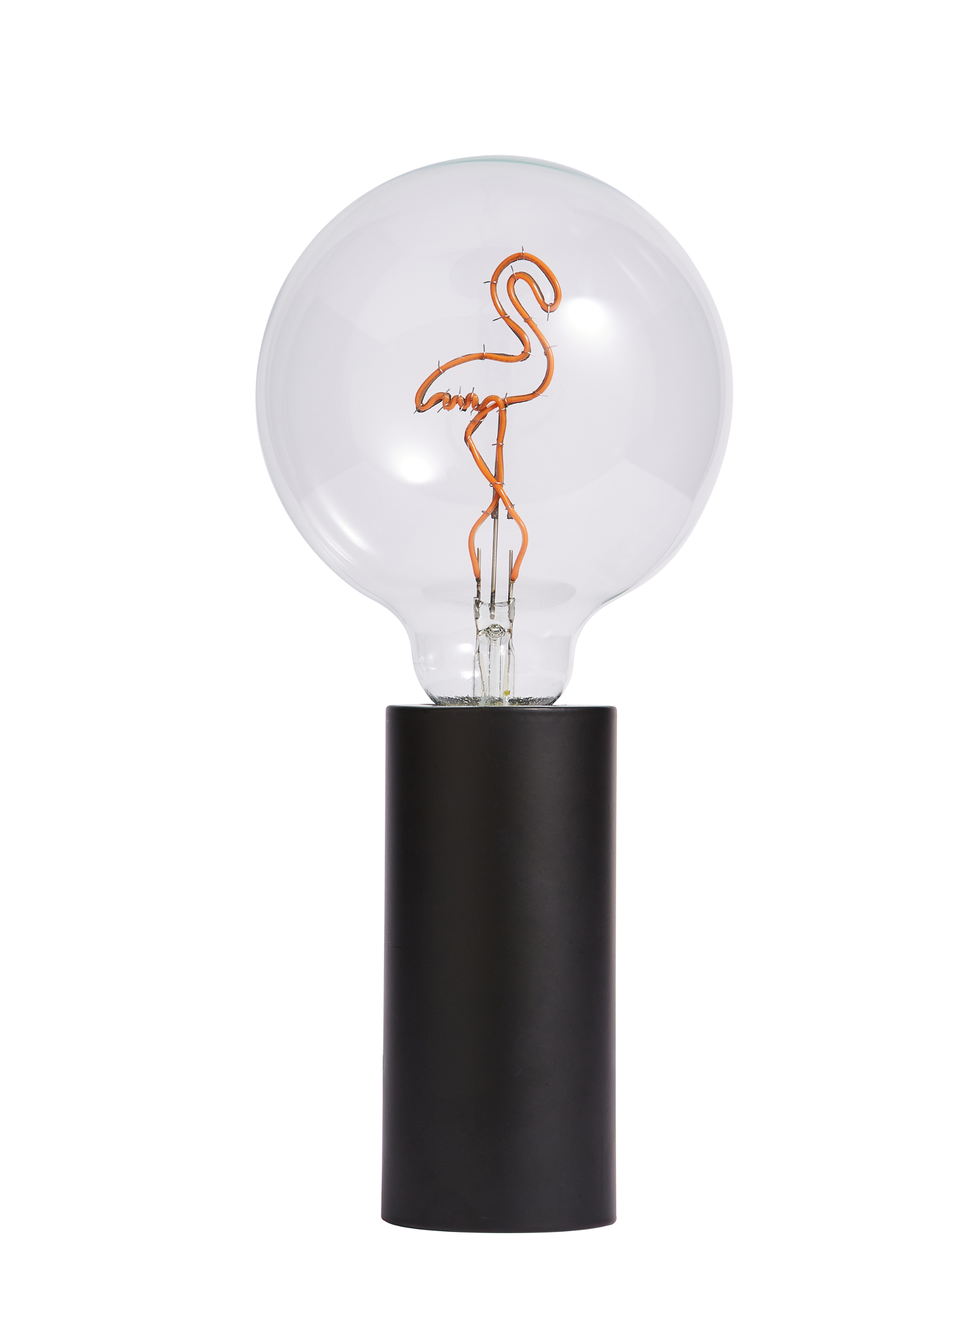 Inlight Flamingo Bulb Lamp (26cm x 13cm x 13cm)